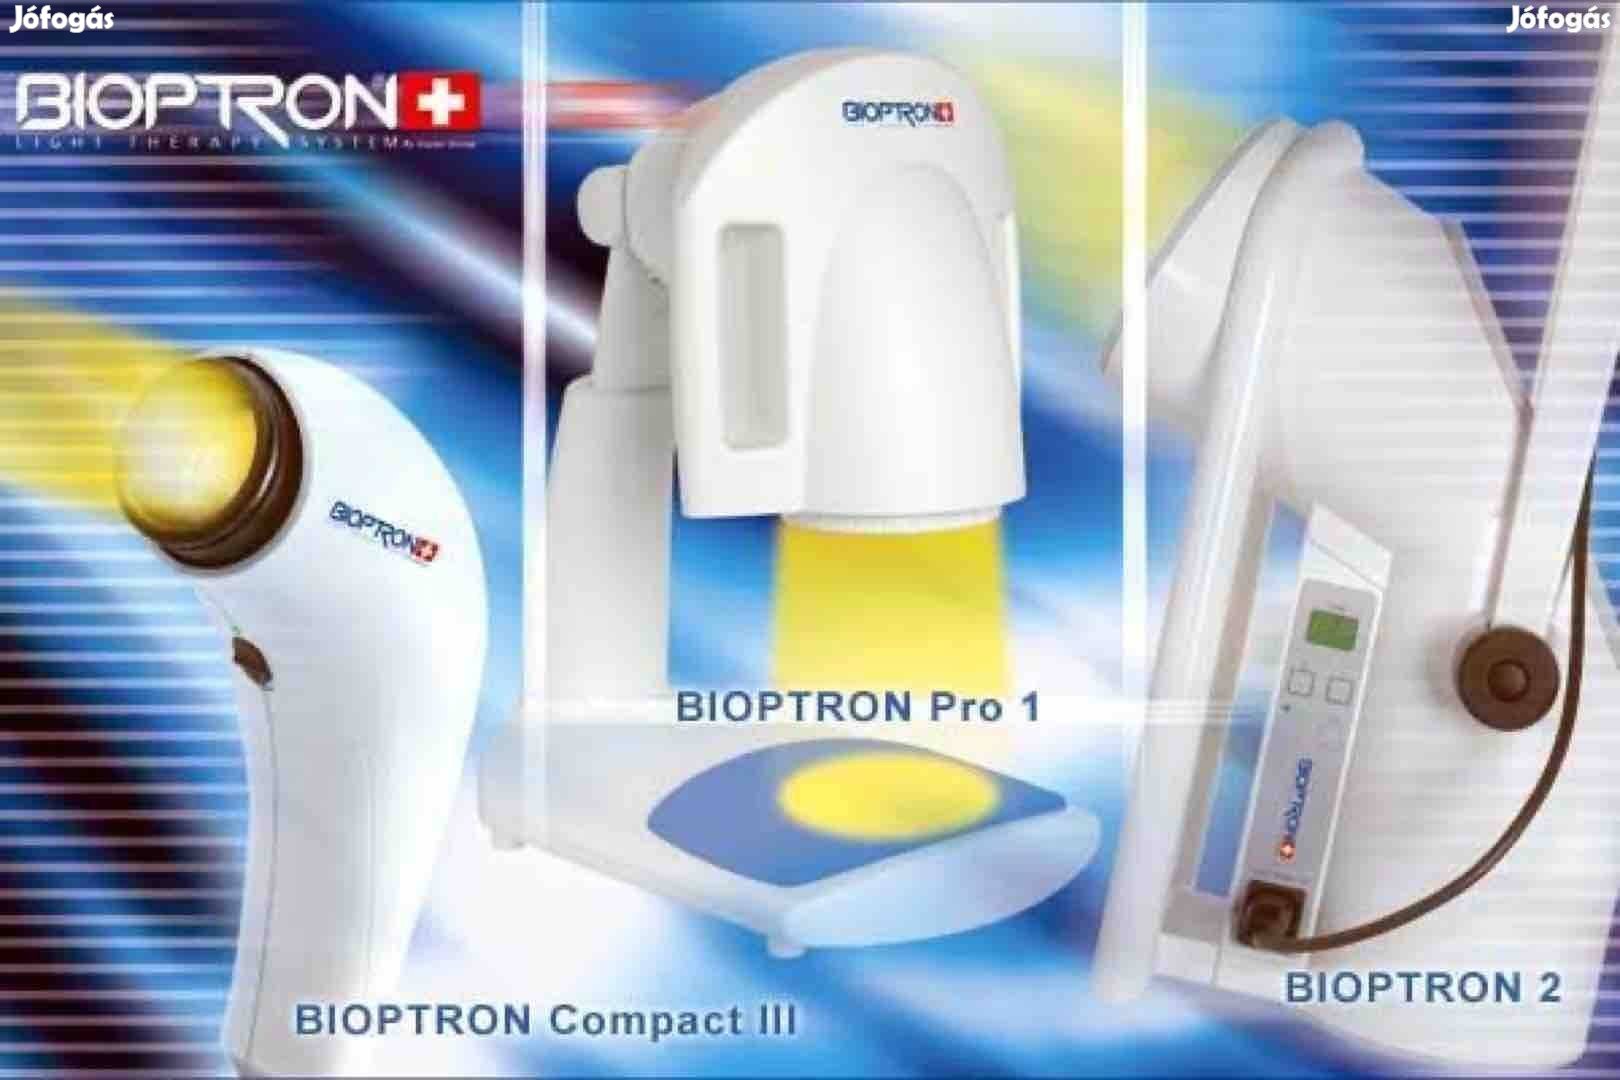 Keresek: Zepter Bioptron lámpa,tartozékok, Zepter termékek azonnali vétele!